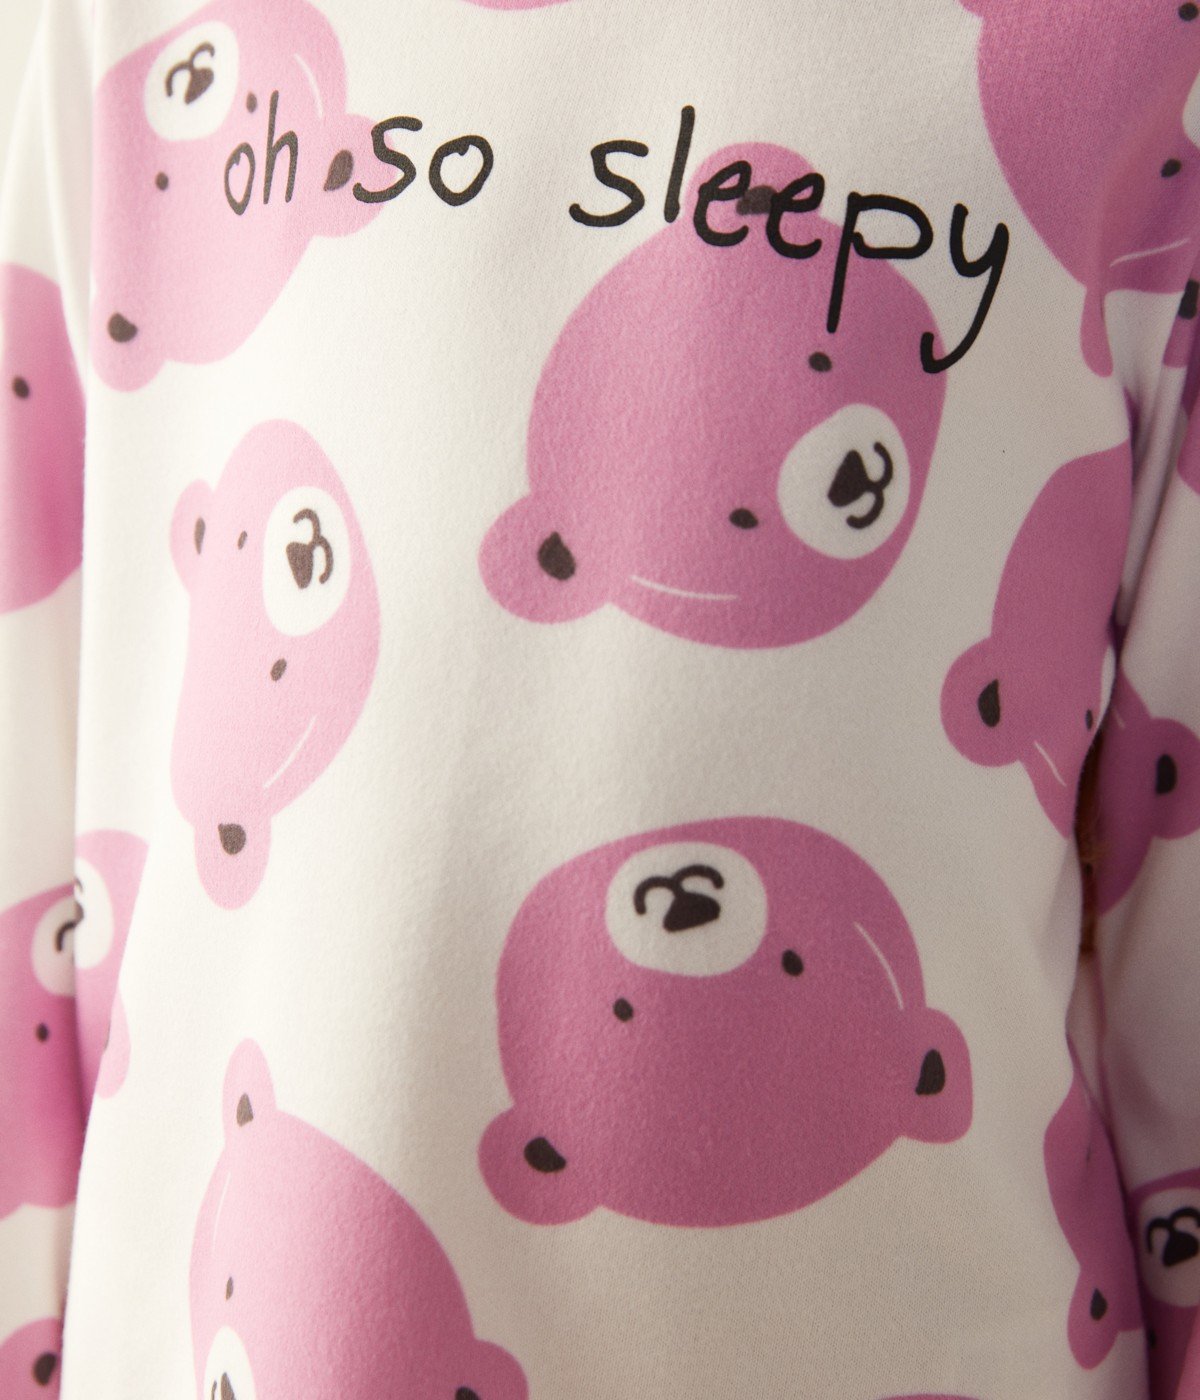 Set Pijama Pink Bear